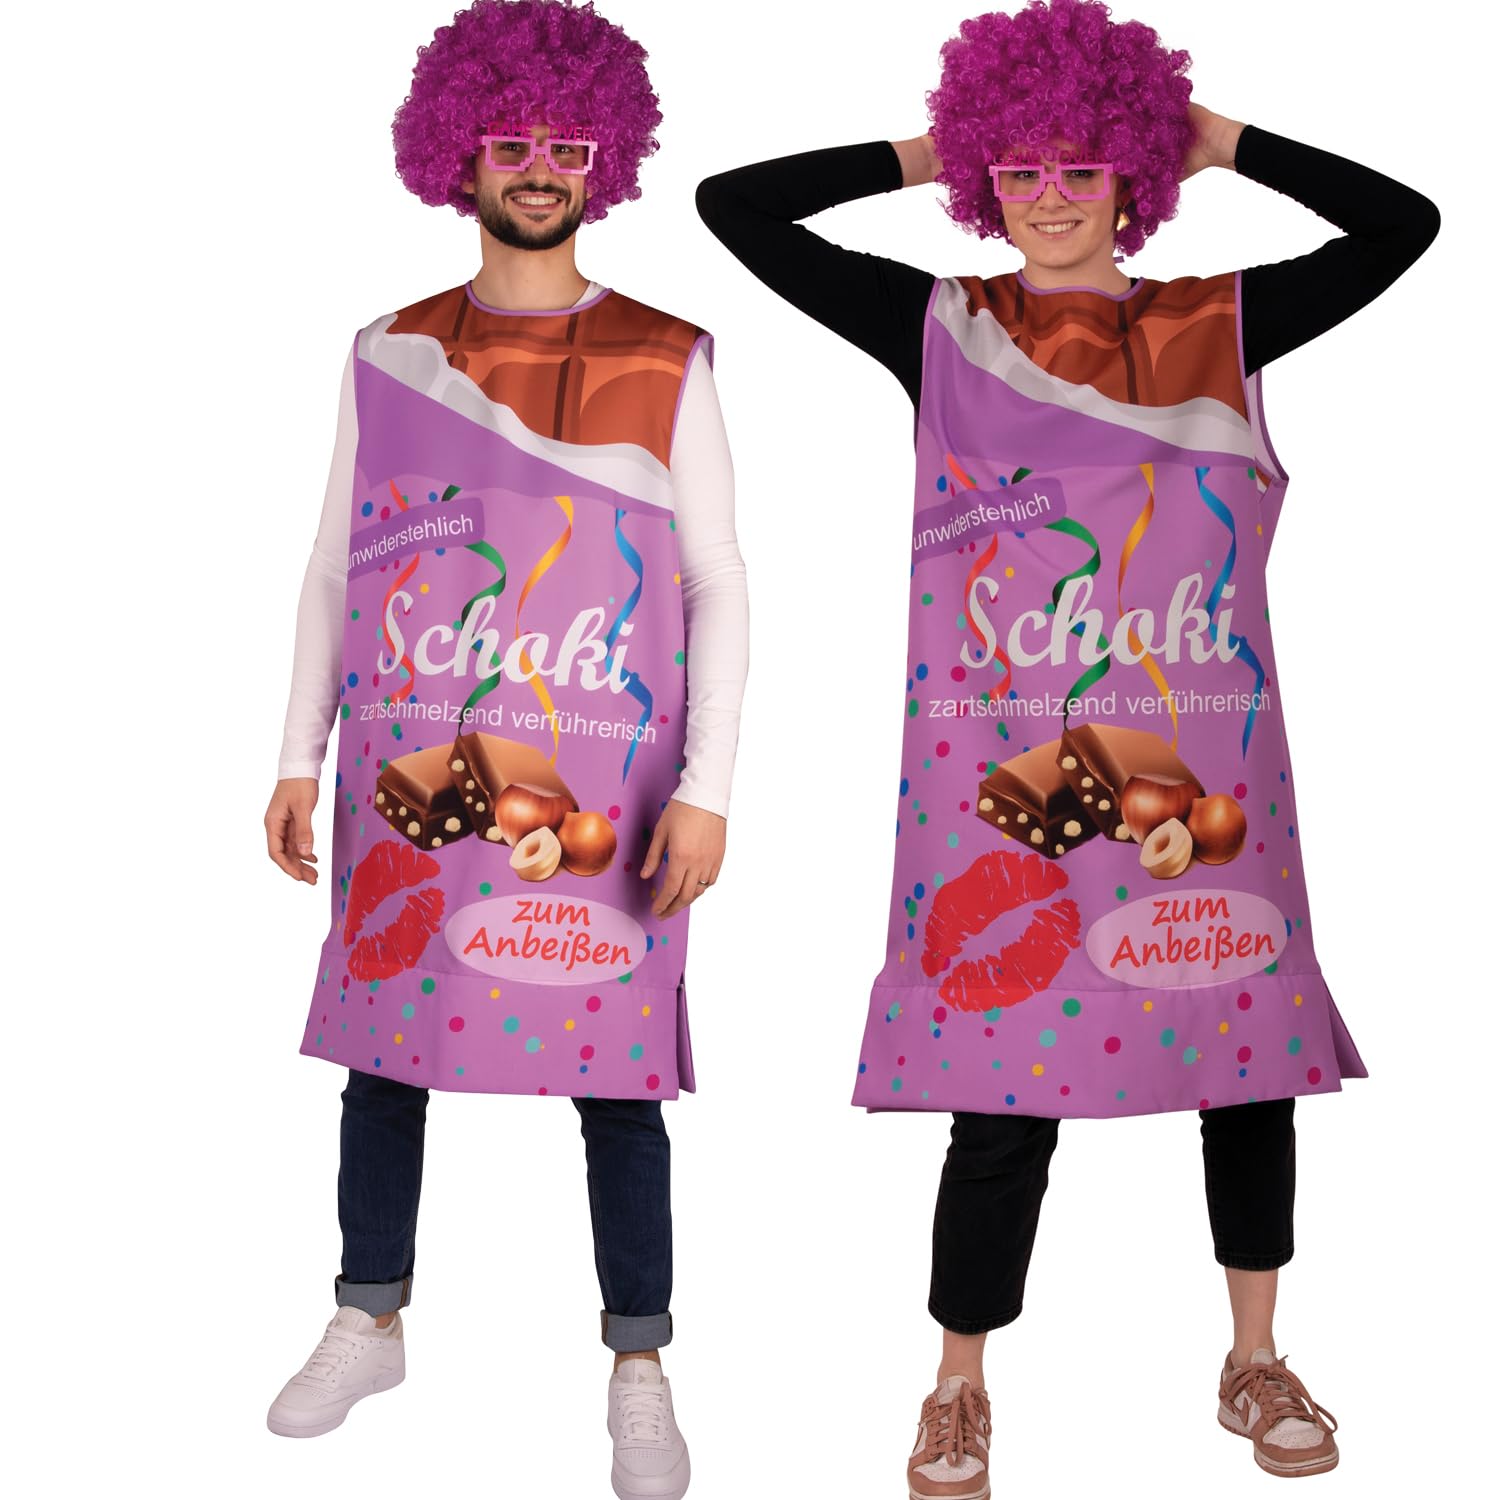 Krause & Sohn Schokoladen Kostüm Vernasch Mich Schoko für Erwachsene Gr. S-XXL lila Fasching Karneval JGA Sßigkeiten-Kostüm Schokoladentafel (S)